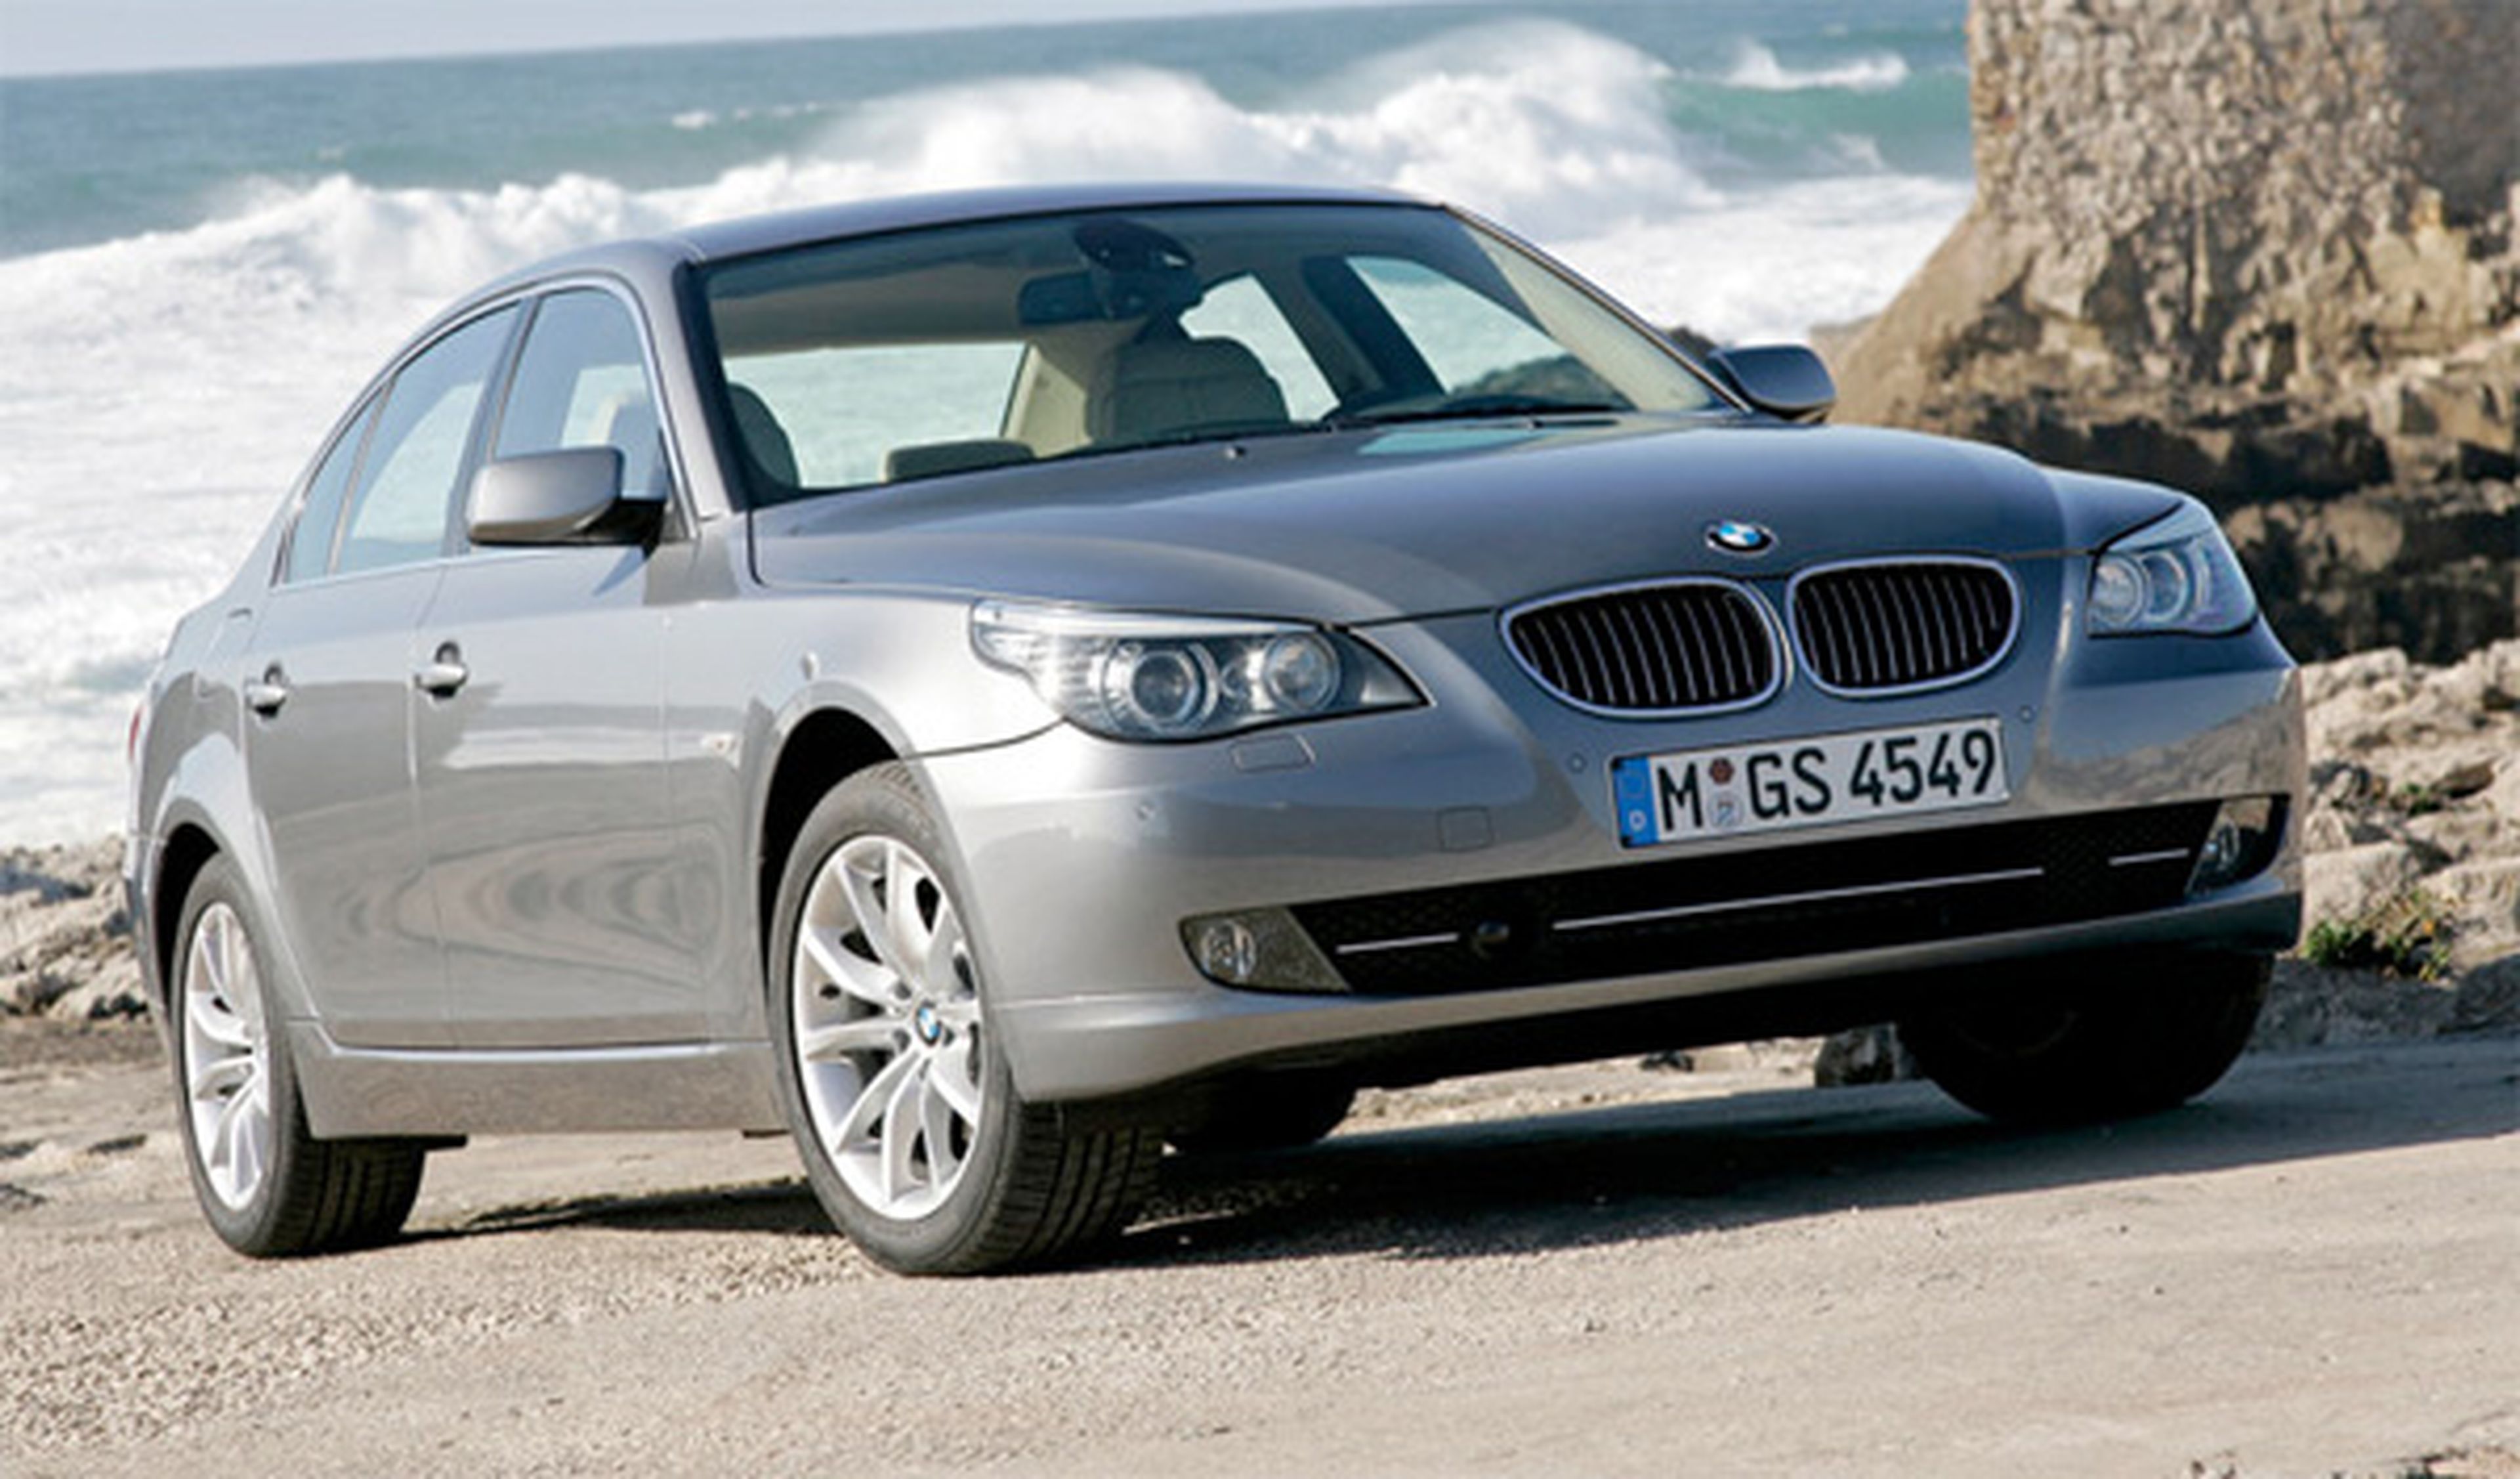 BMW llama a revisión a 1,3 millones de vehículos